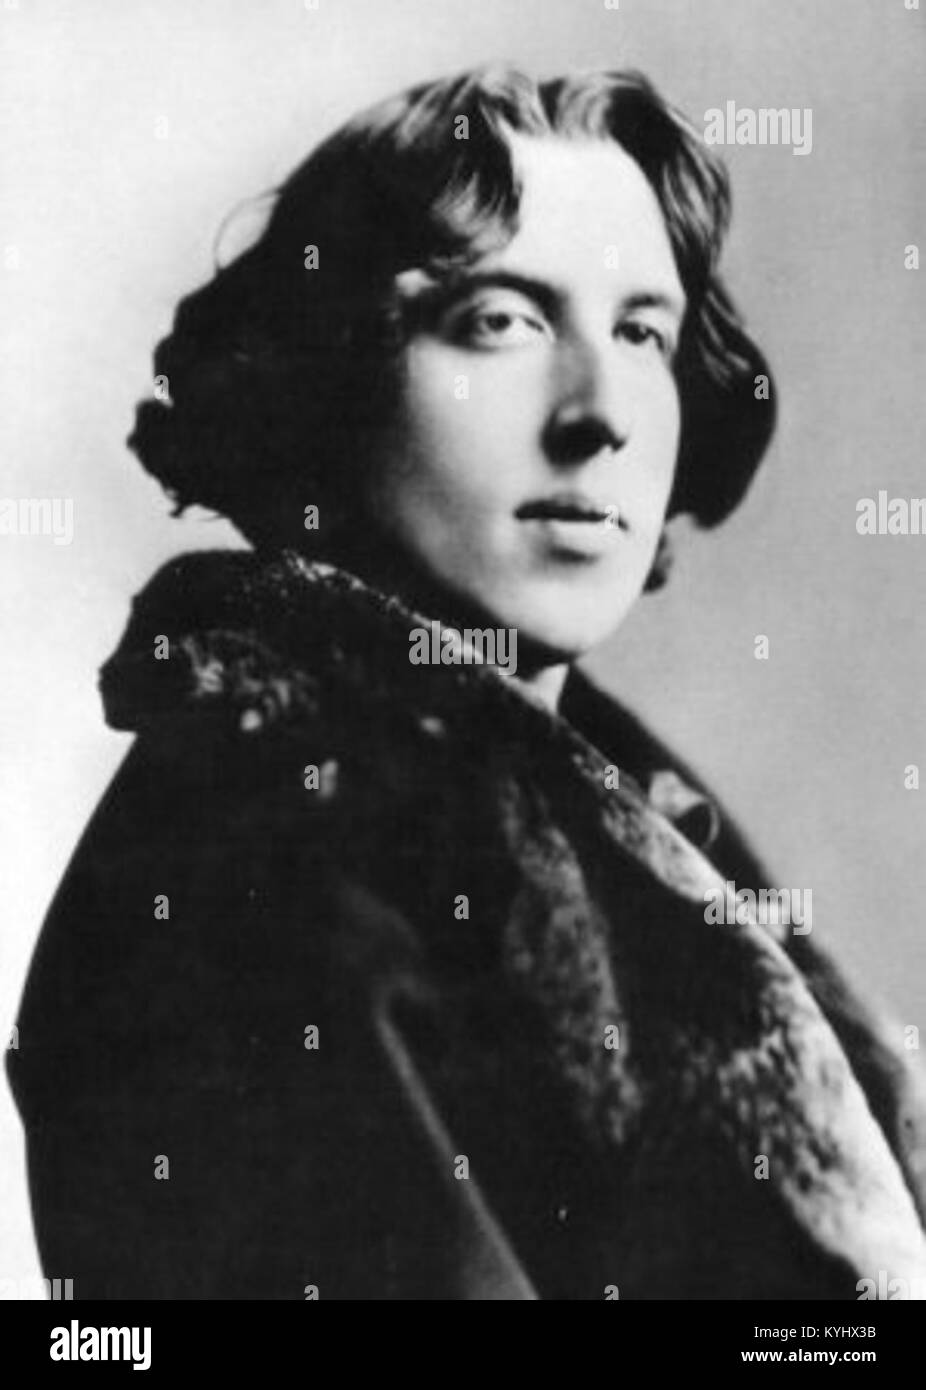 Sarony, Napoleon (1821-1896) - Oscar Wilde (1854-1900) 1882 - picture - 23 - reversed Stock Photo